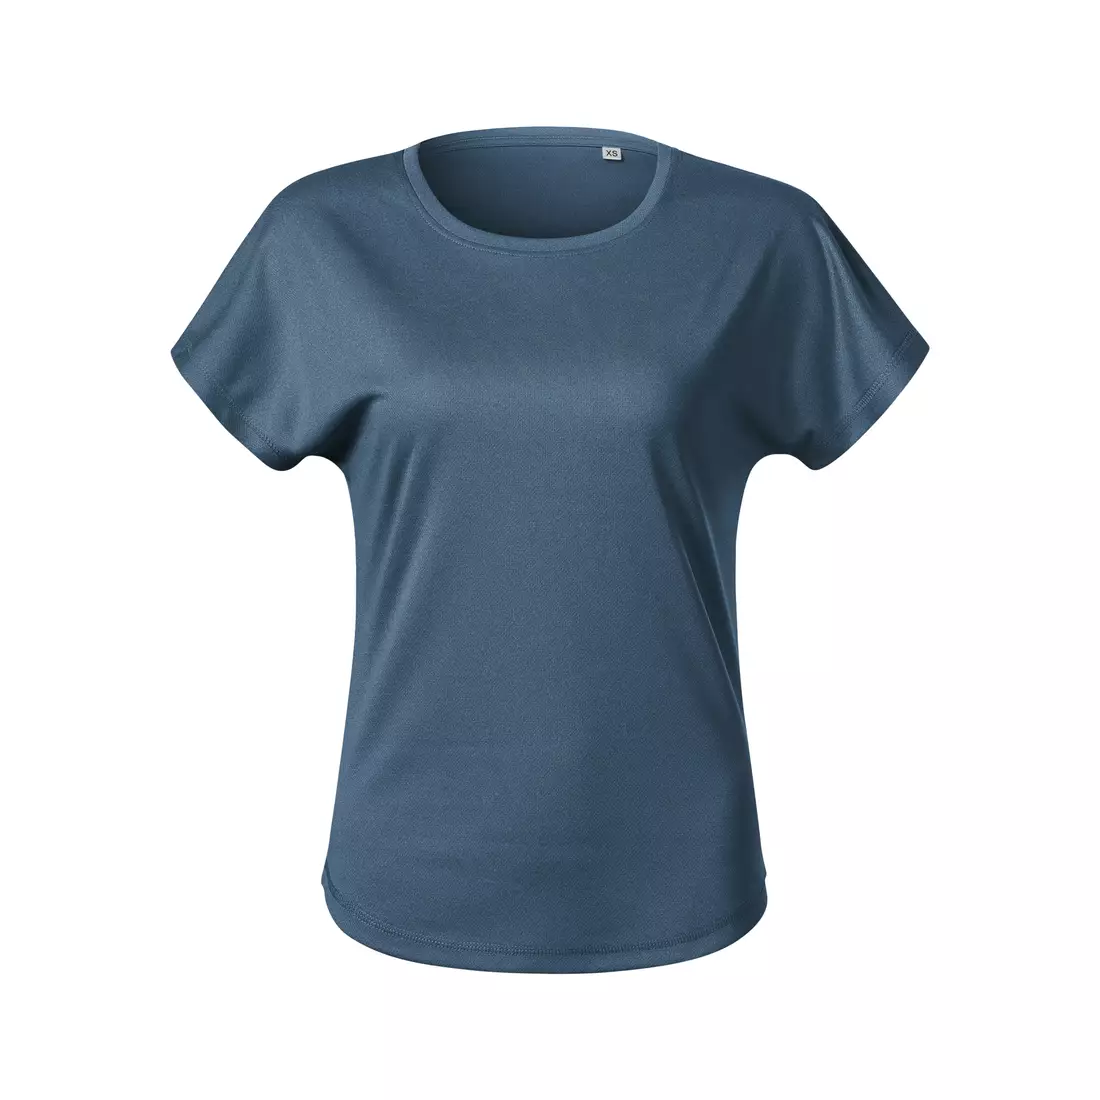 MALFINI CHANCE GRS Női sport póló, rövid ujjú, újrahasznosított mikropoliészter, sötétkék farmer melírozott 811M212